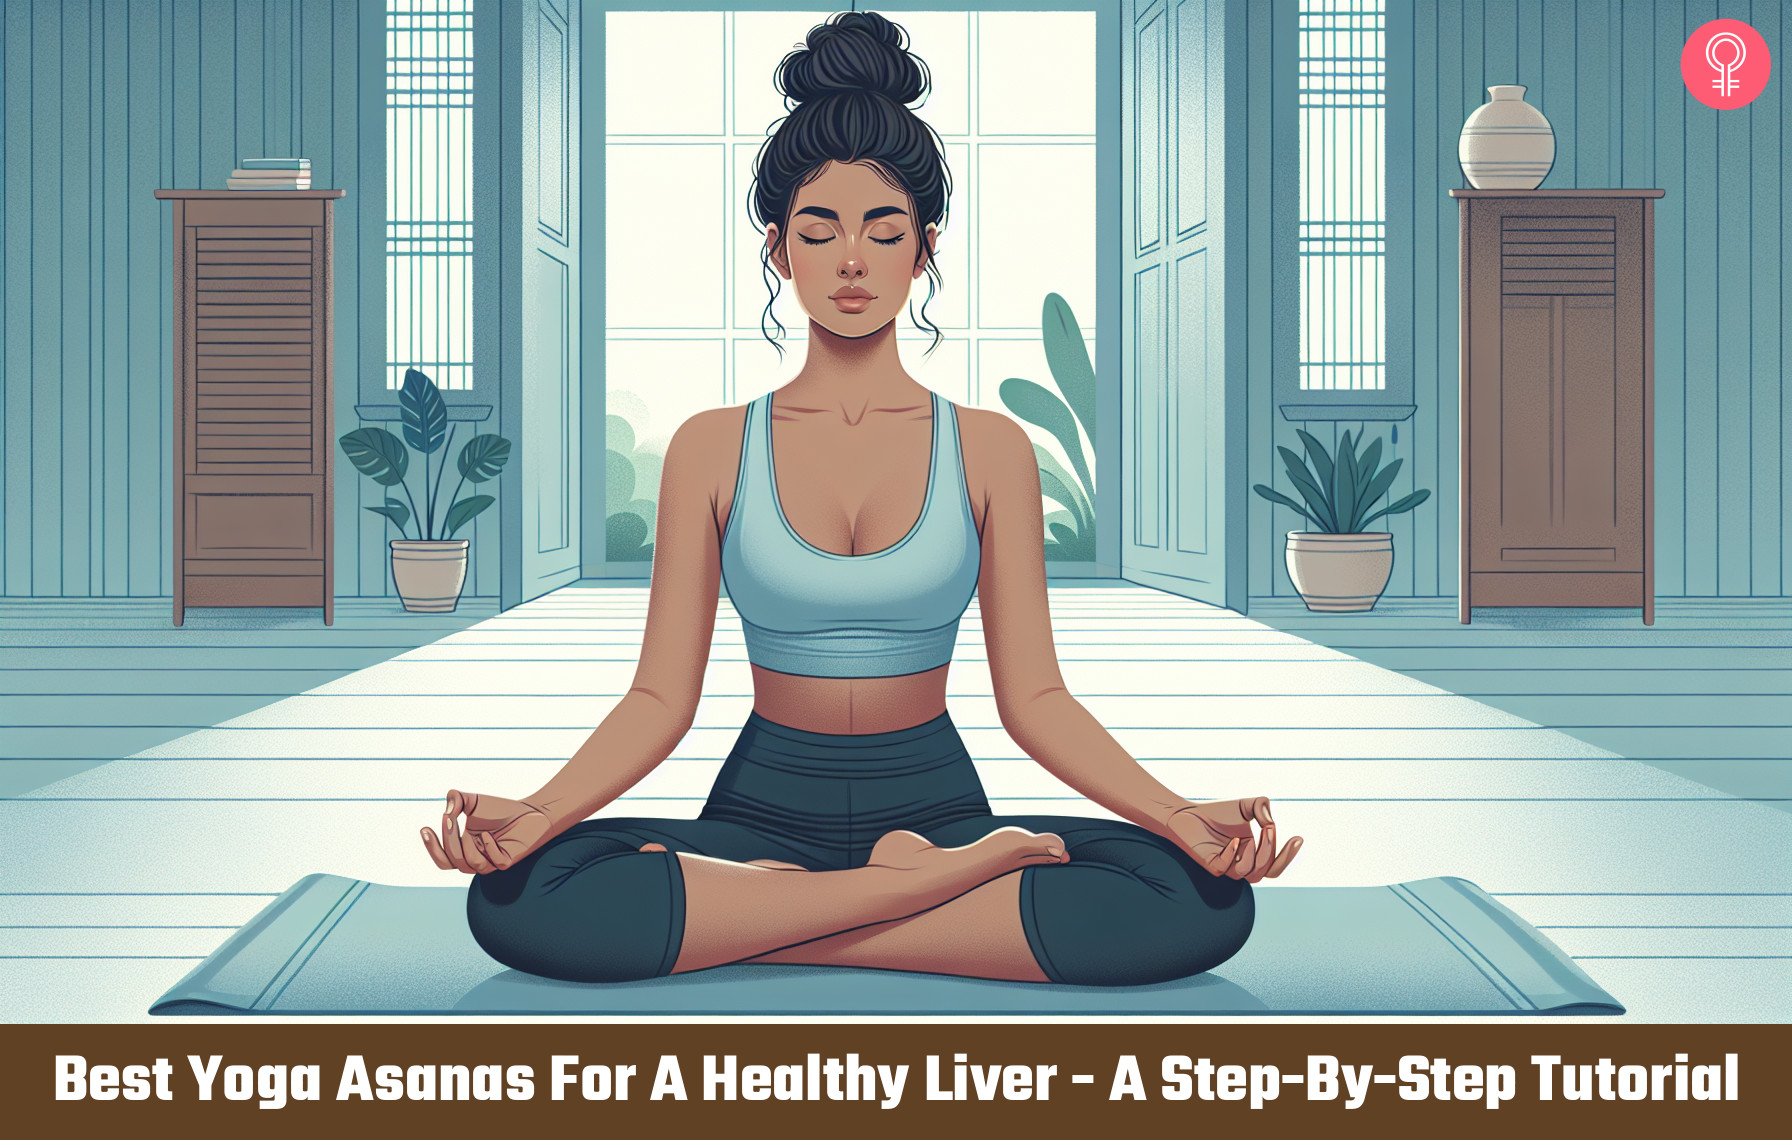 Yoga Asanas For A Healthy Liver